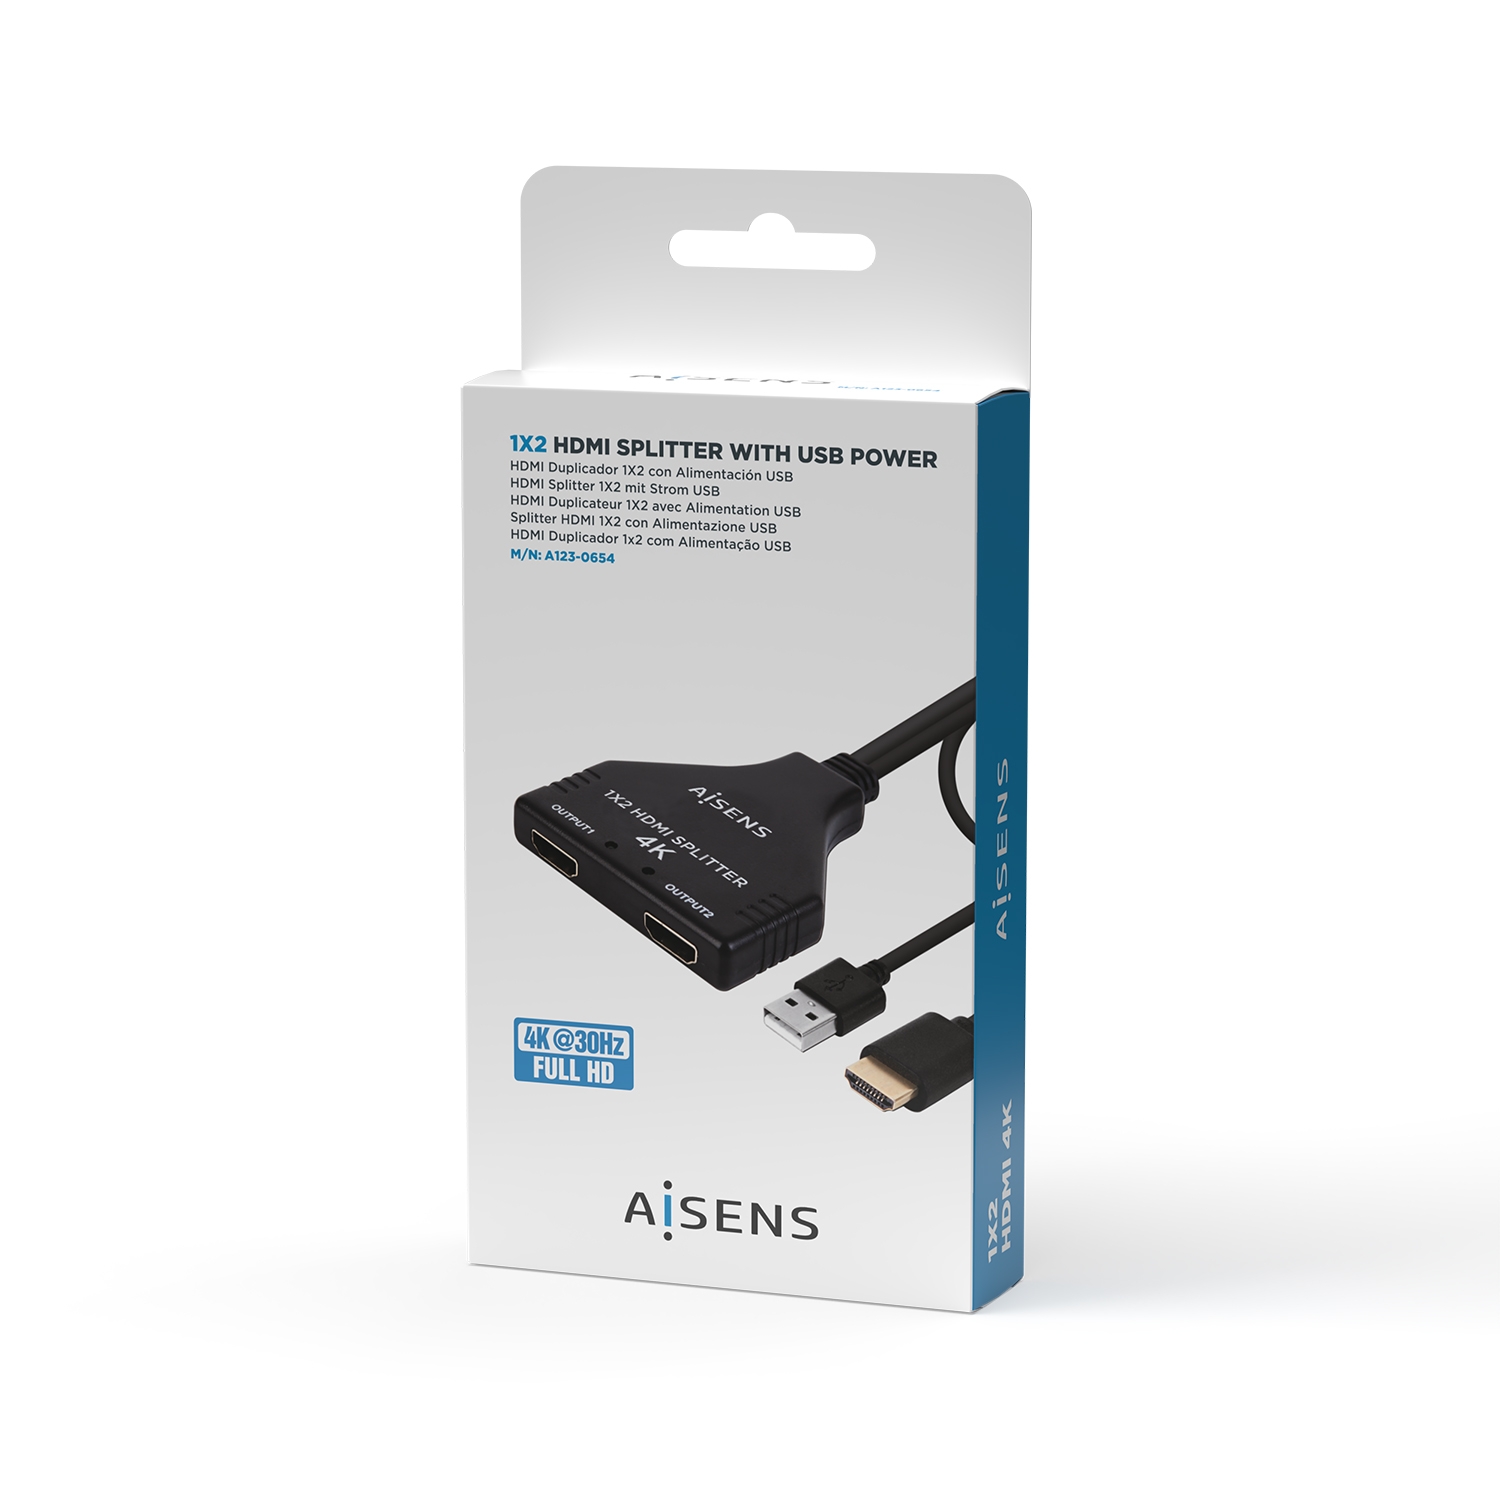 AISENS - HDMI Duplicador 4K@30HZ 1x2 con Alimentación USB y Cable